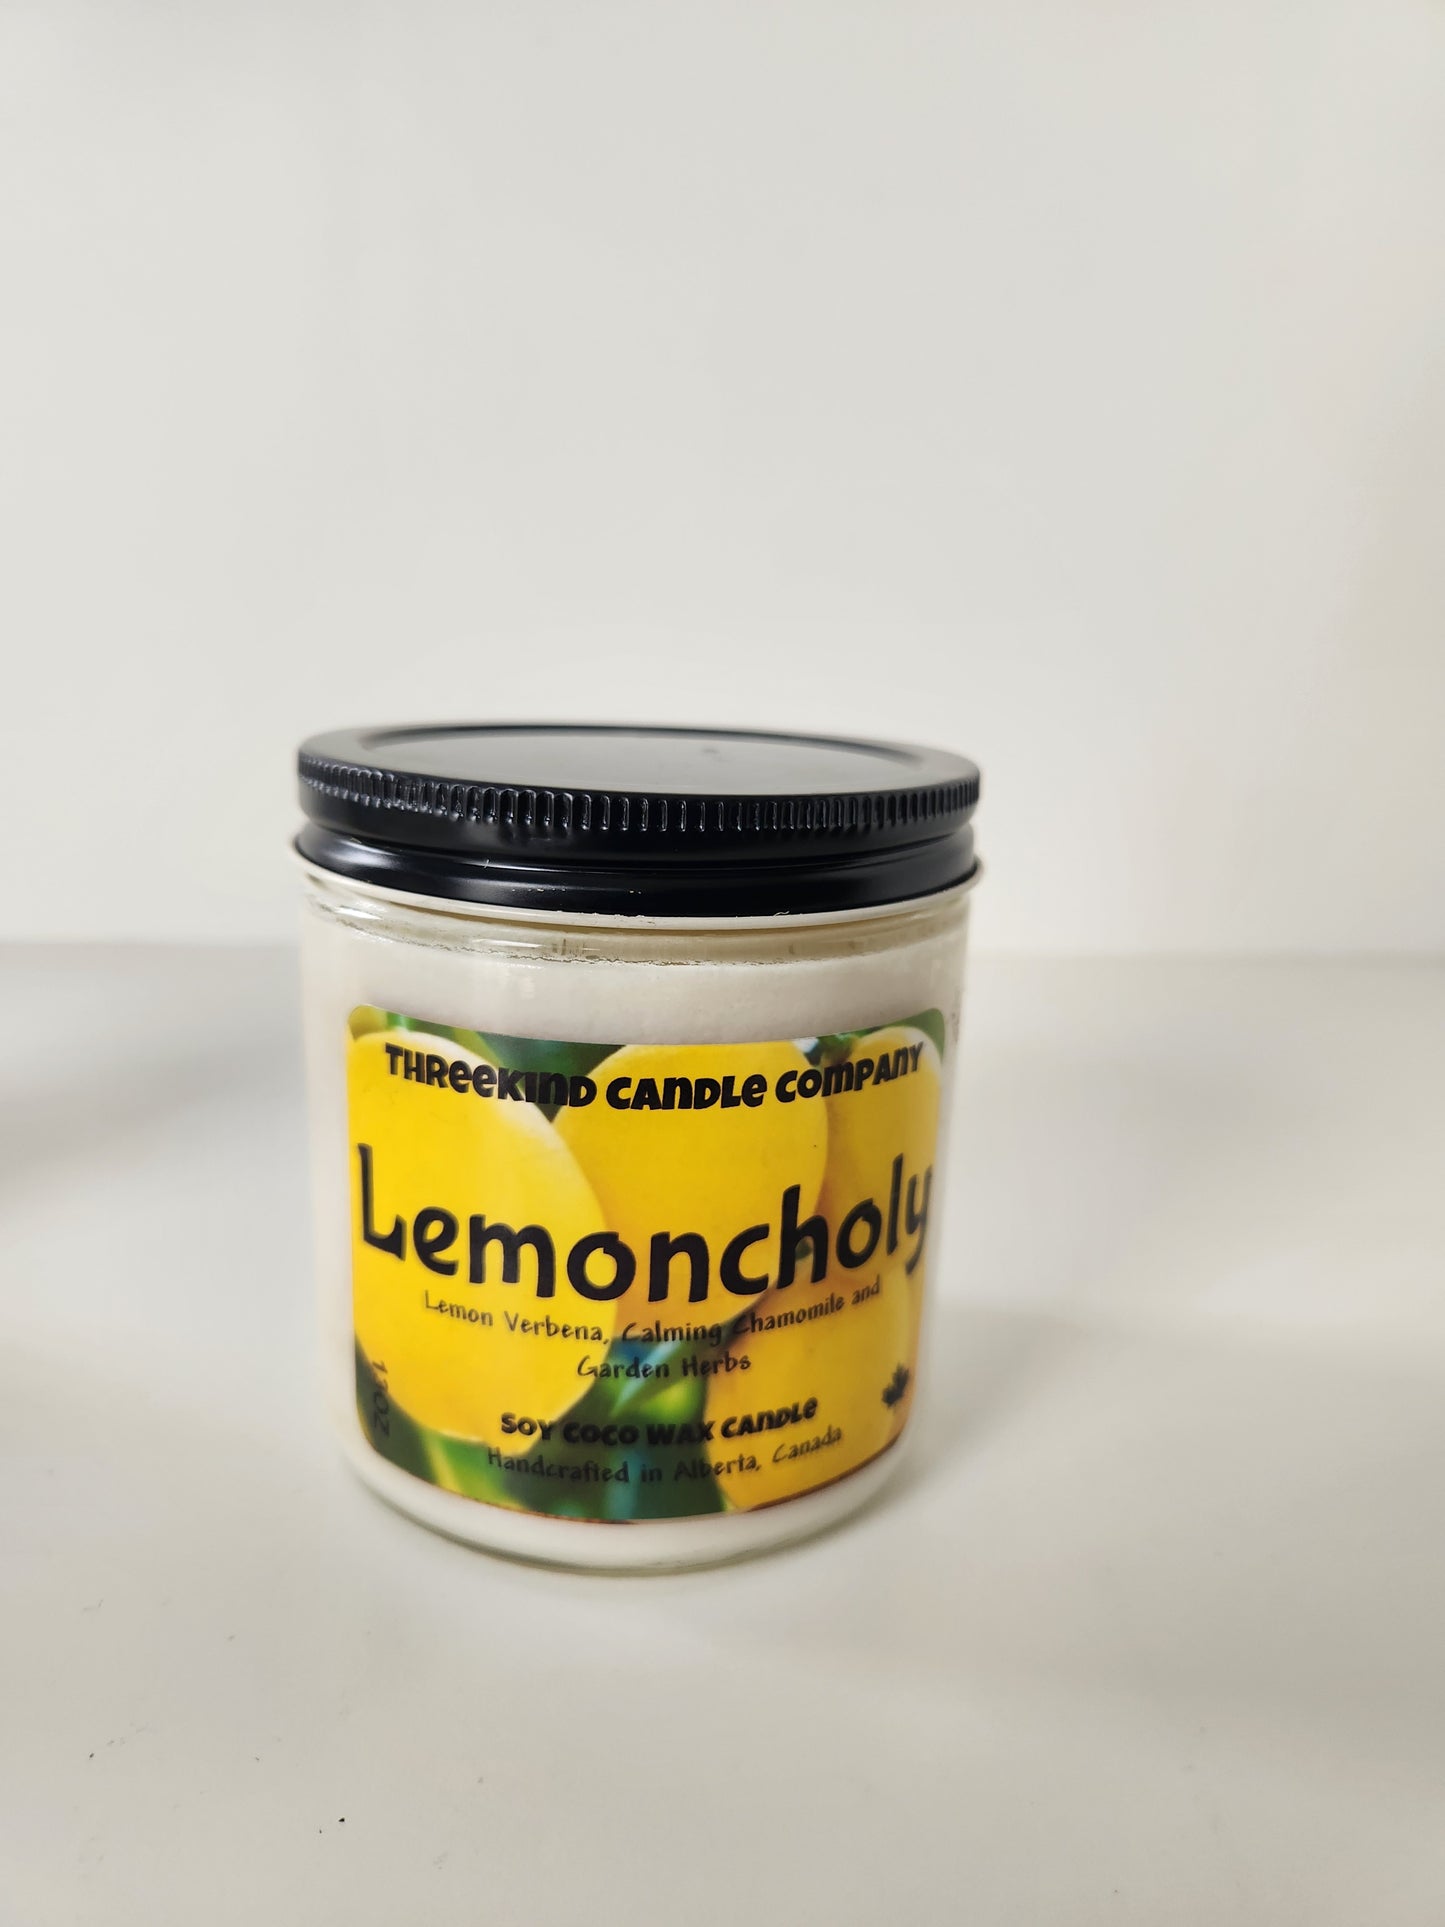 Lemoncholy